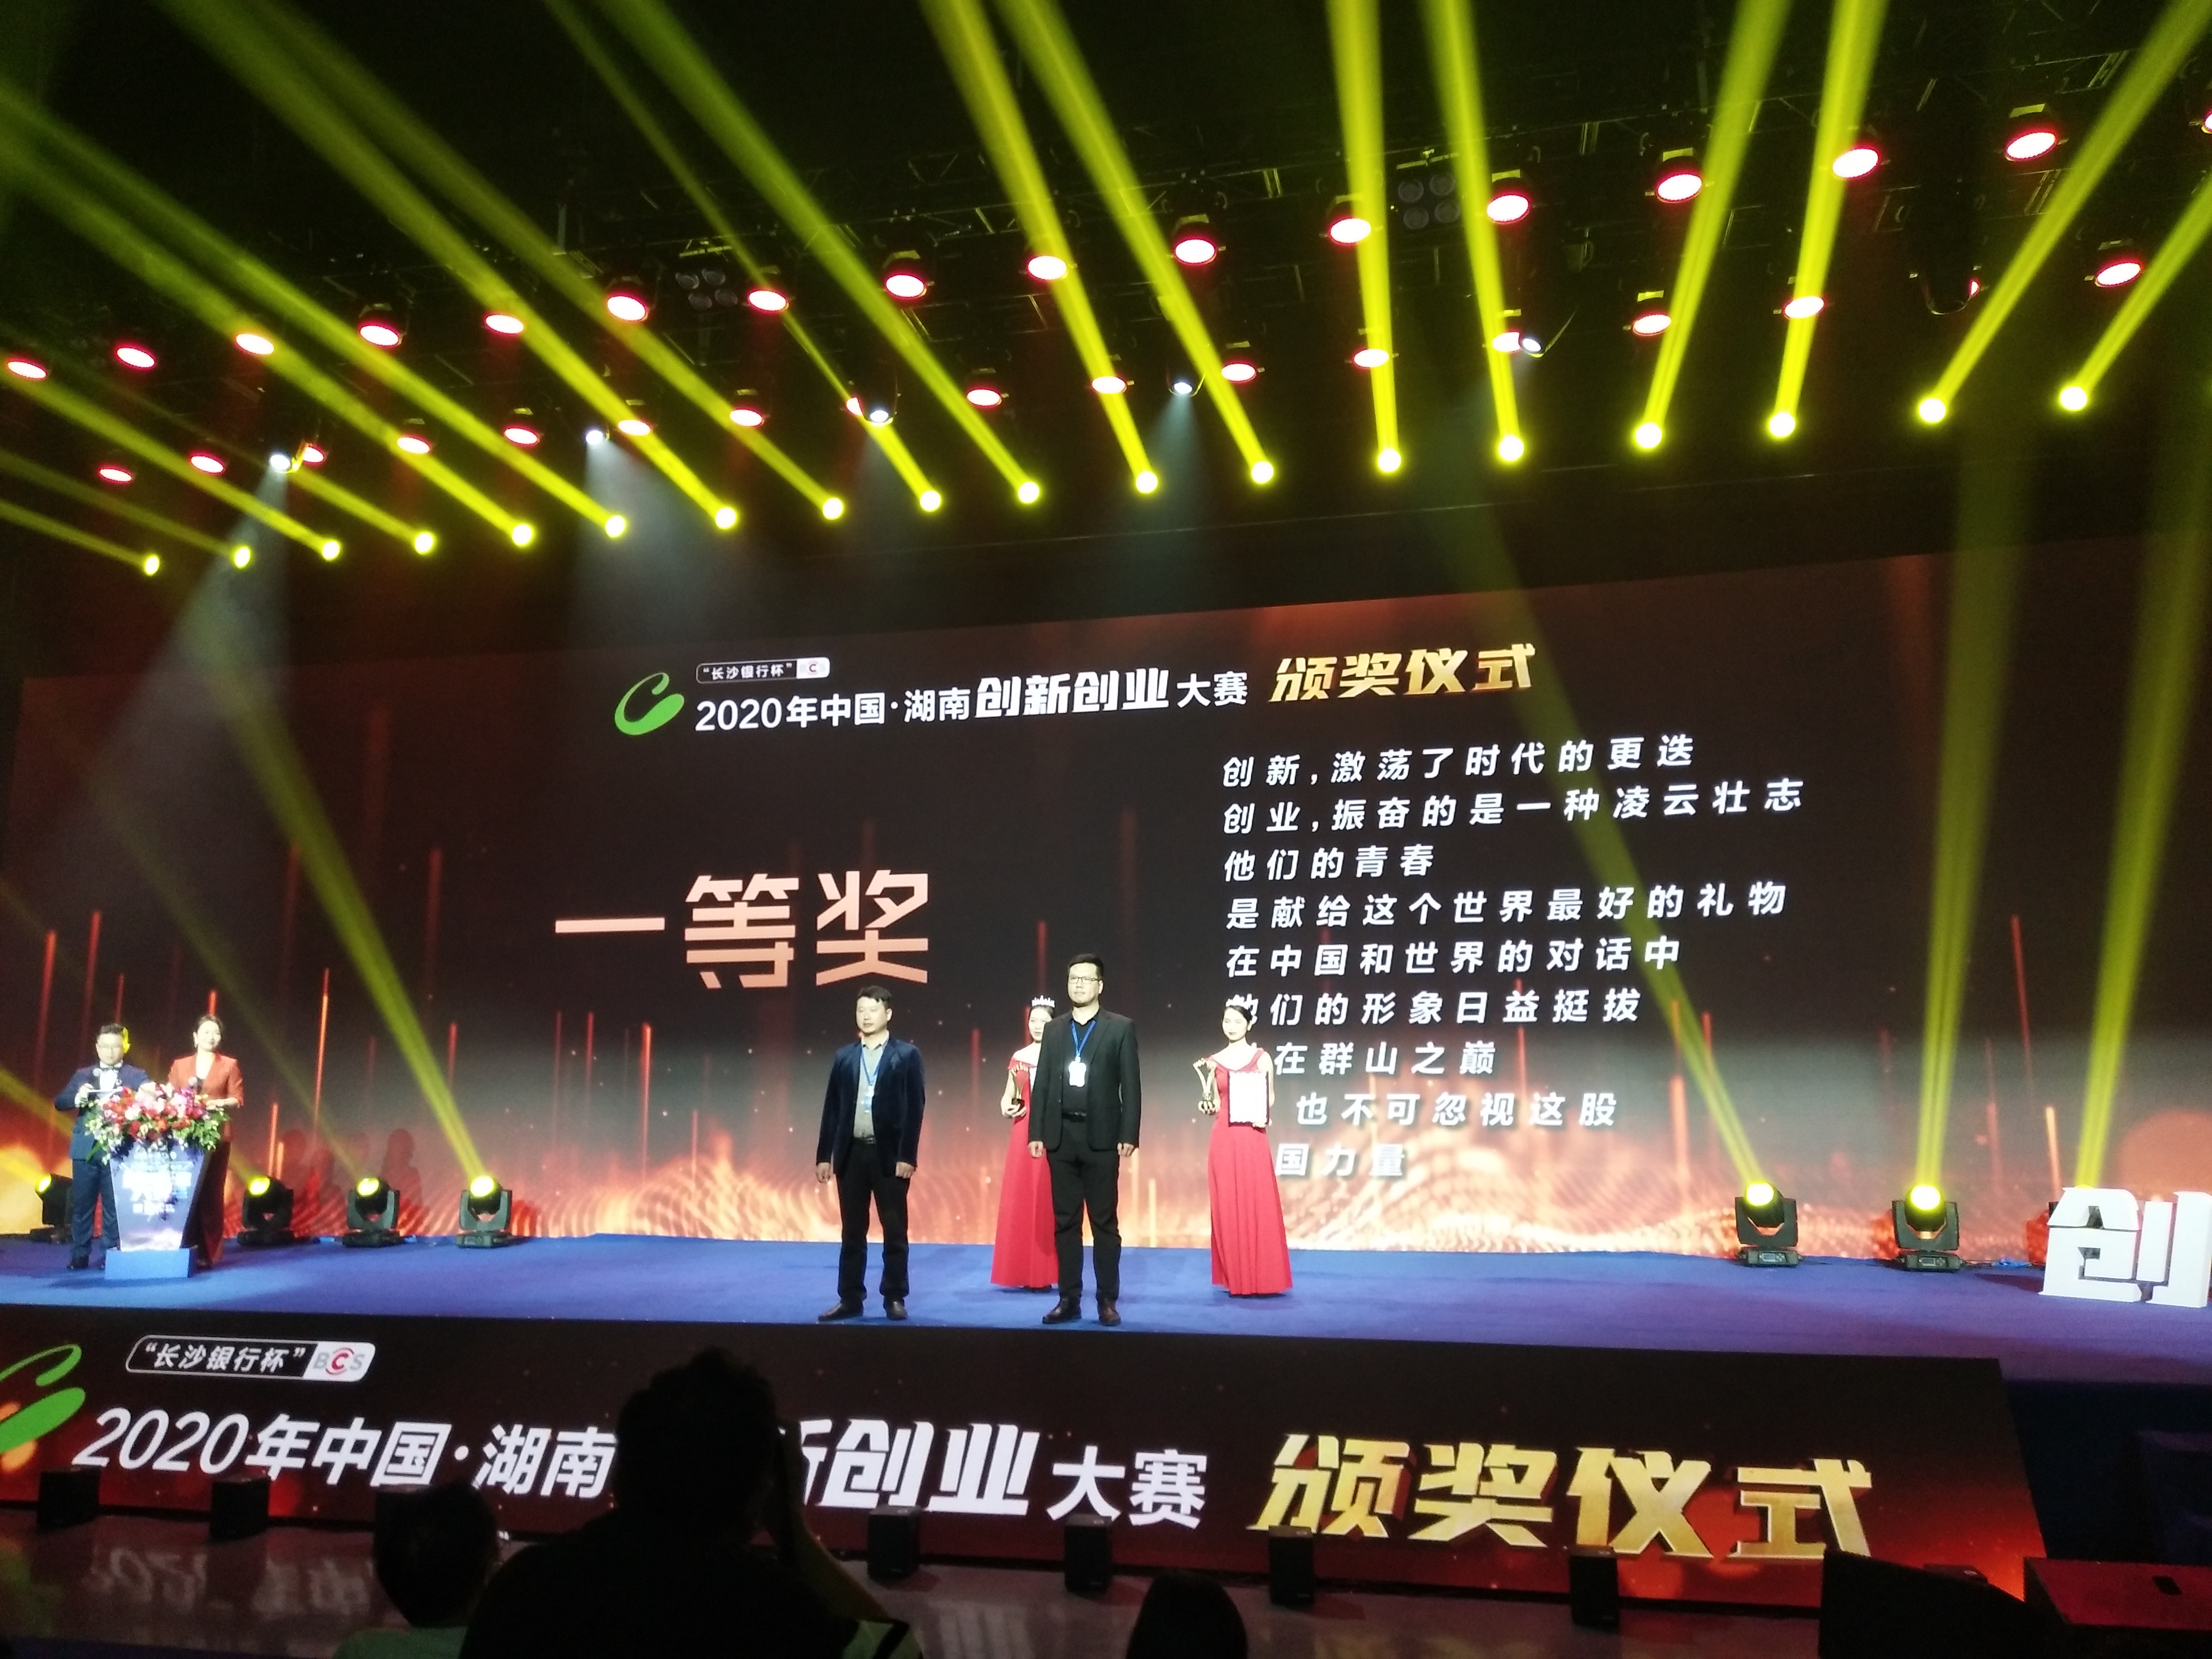 2020年湖南省创新创业大赛颁奖仪式现场。长沙晚报全媒体记者 徐运源 摄